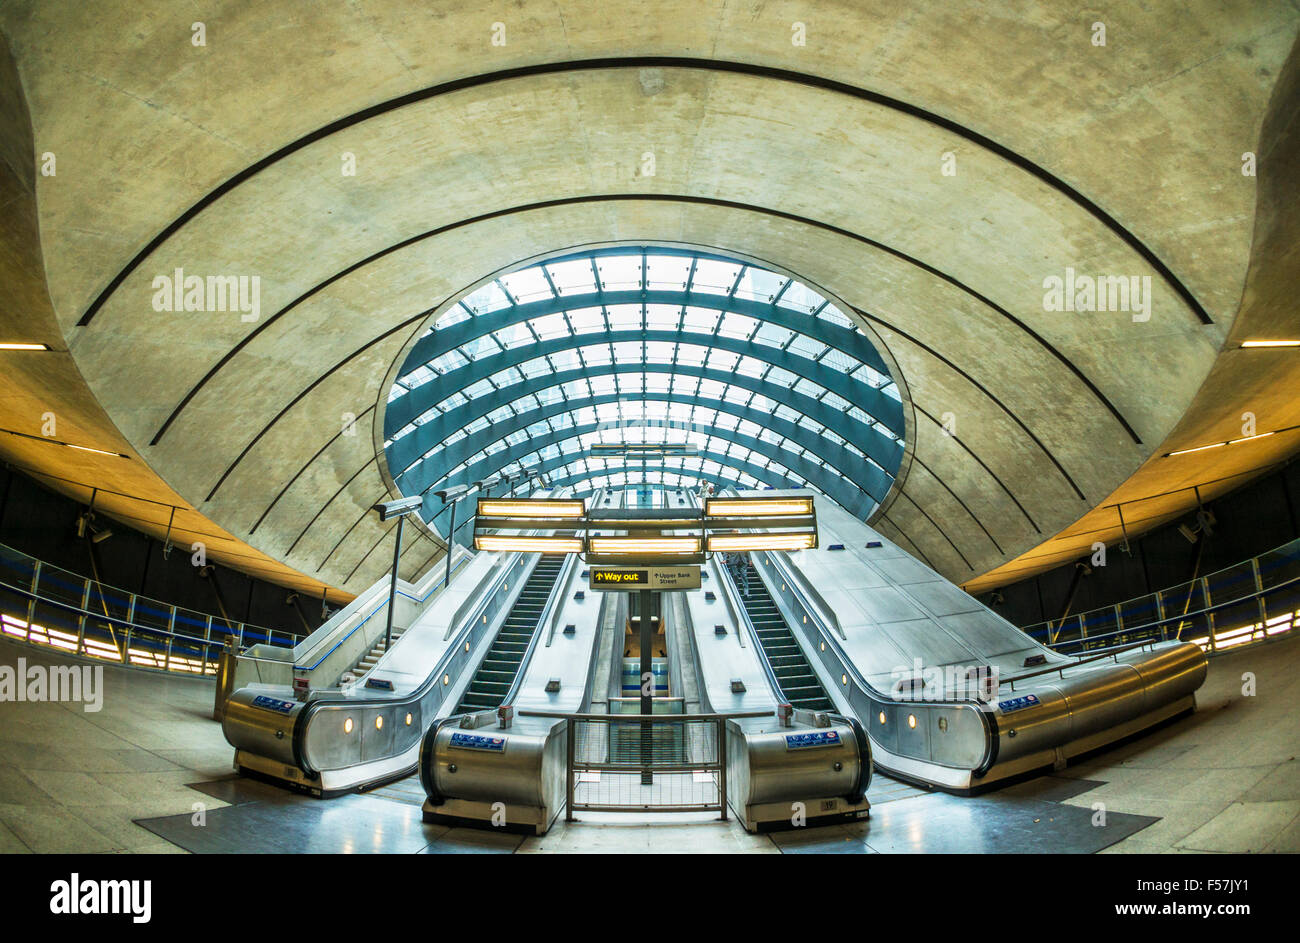 La station de métro Canary Wharf dlr entrée avec escaliers mécaniques London England UK Gb eu Europe Banque D'Images